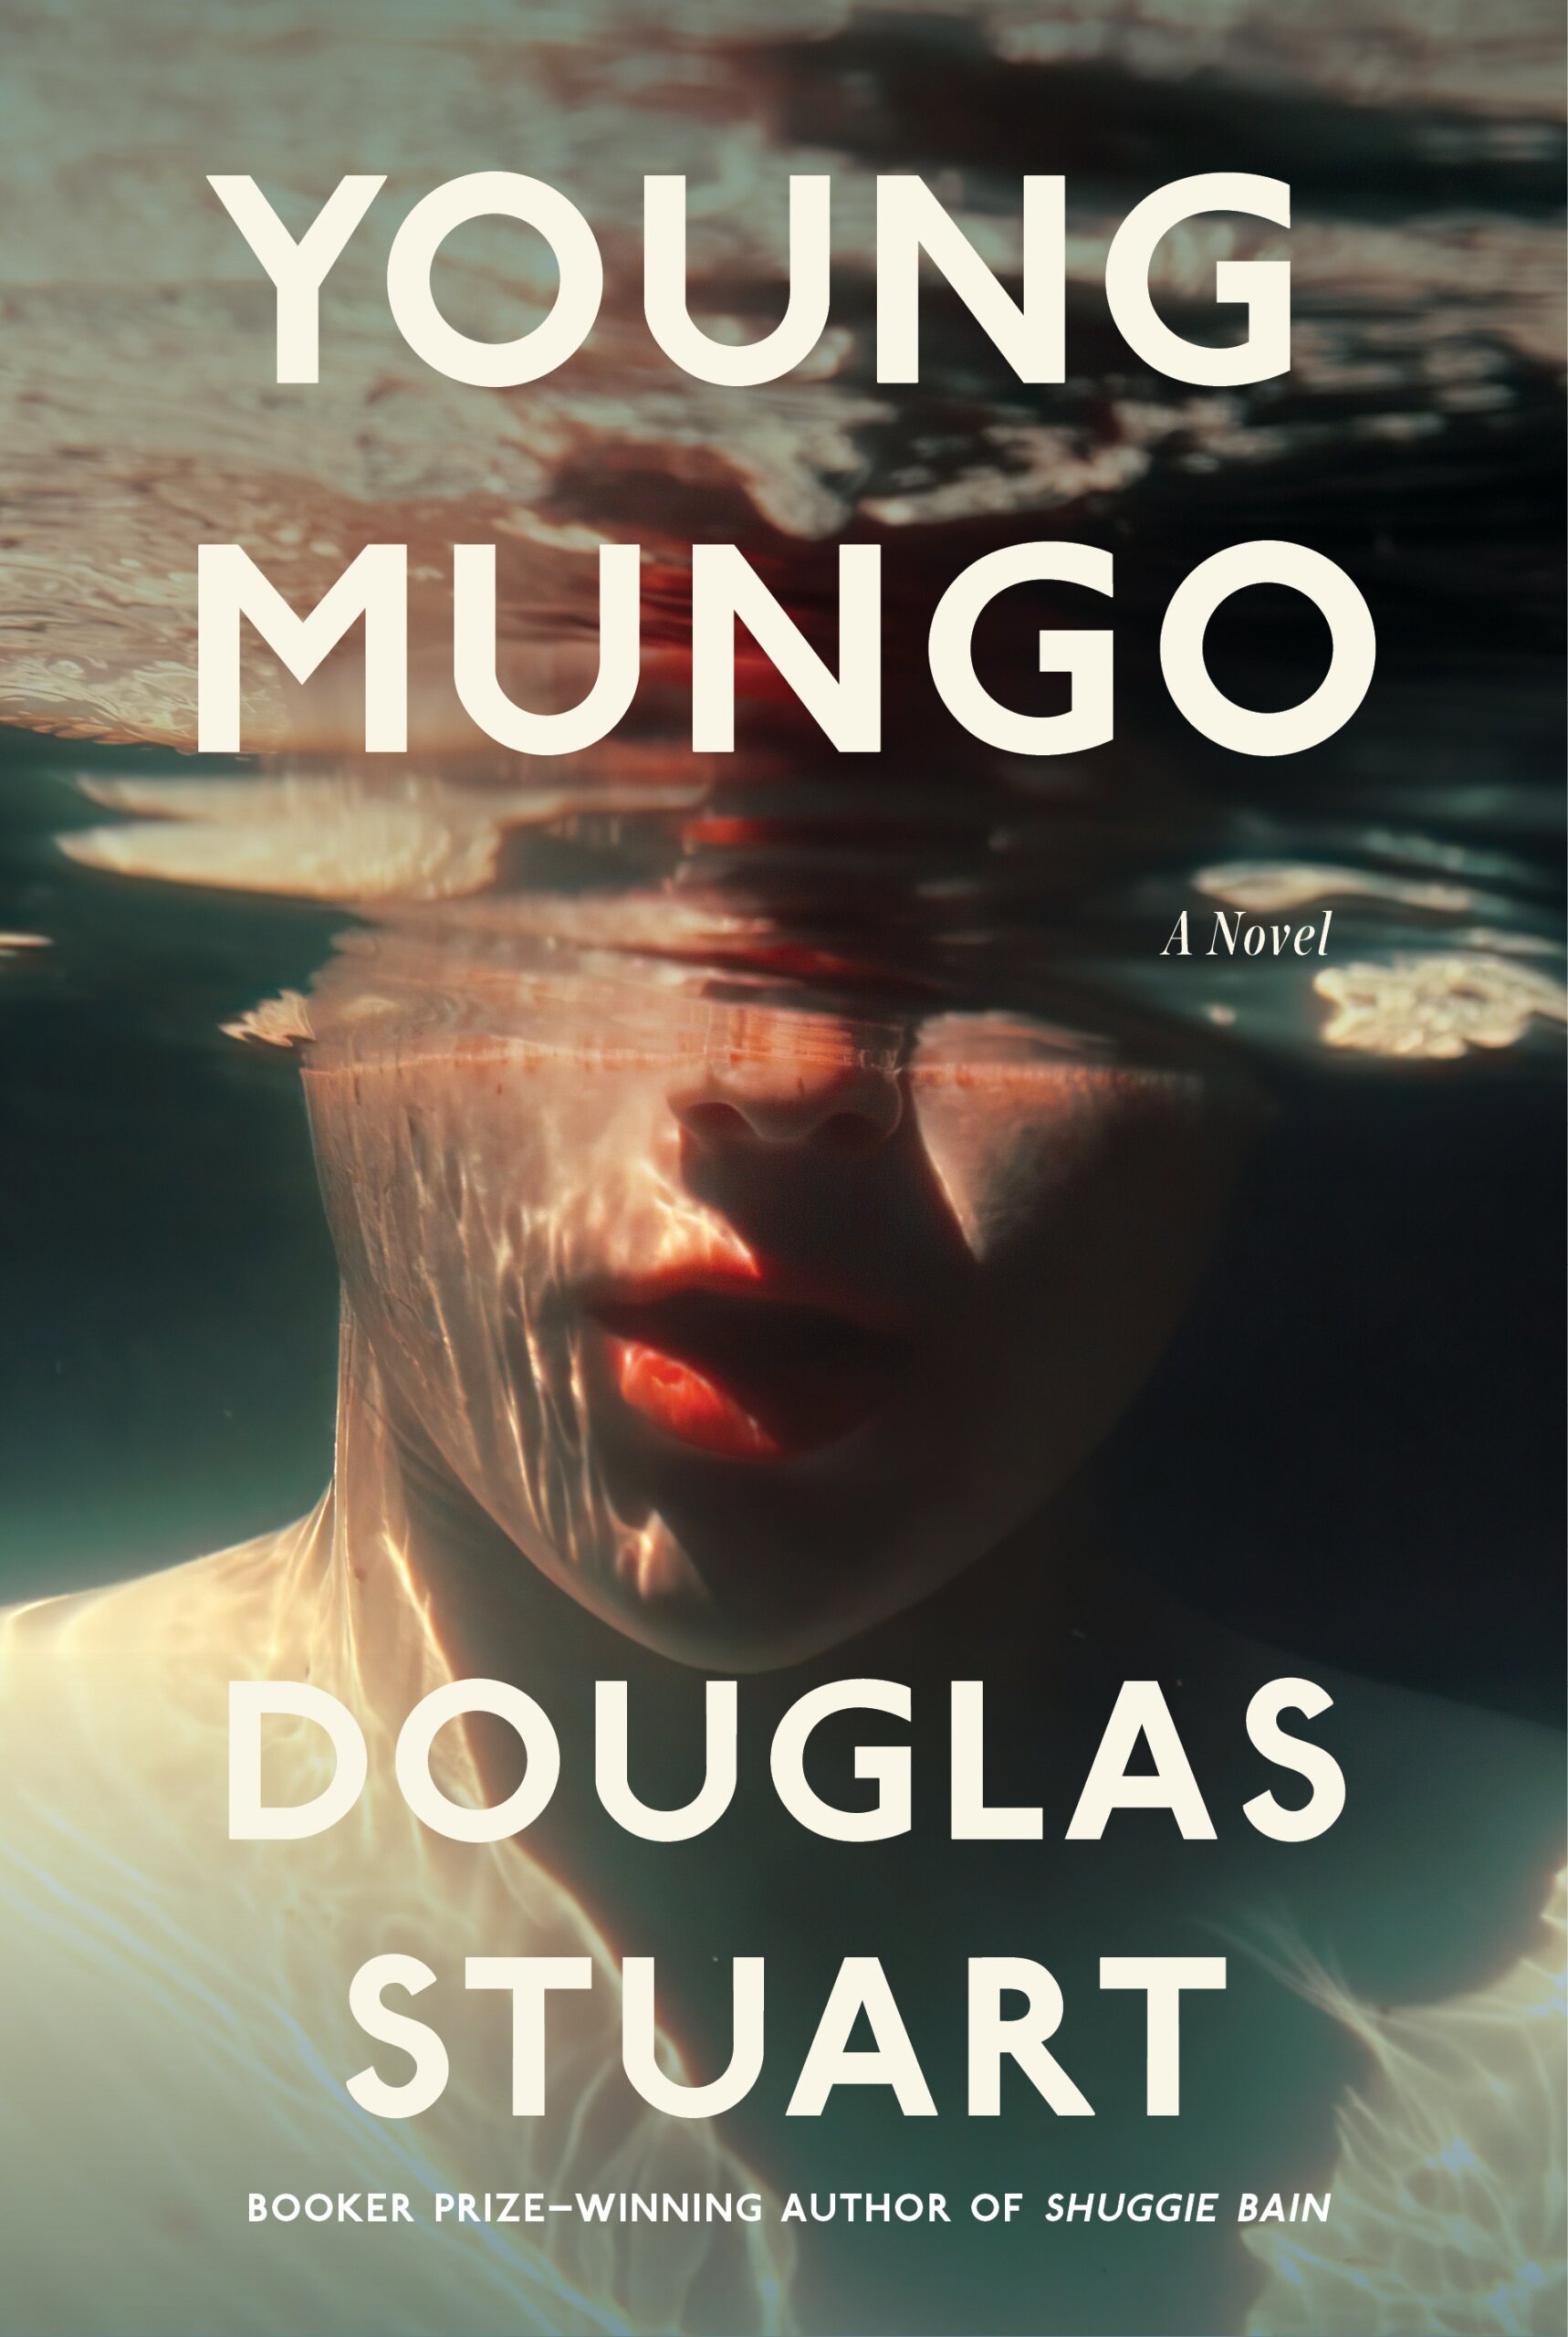 Young Mungo cover by Douglas Stuart